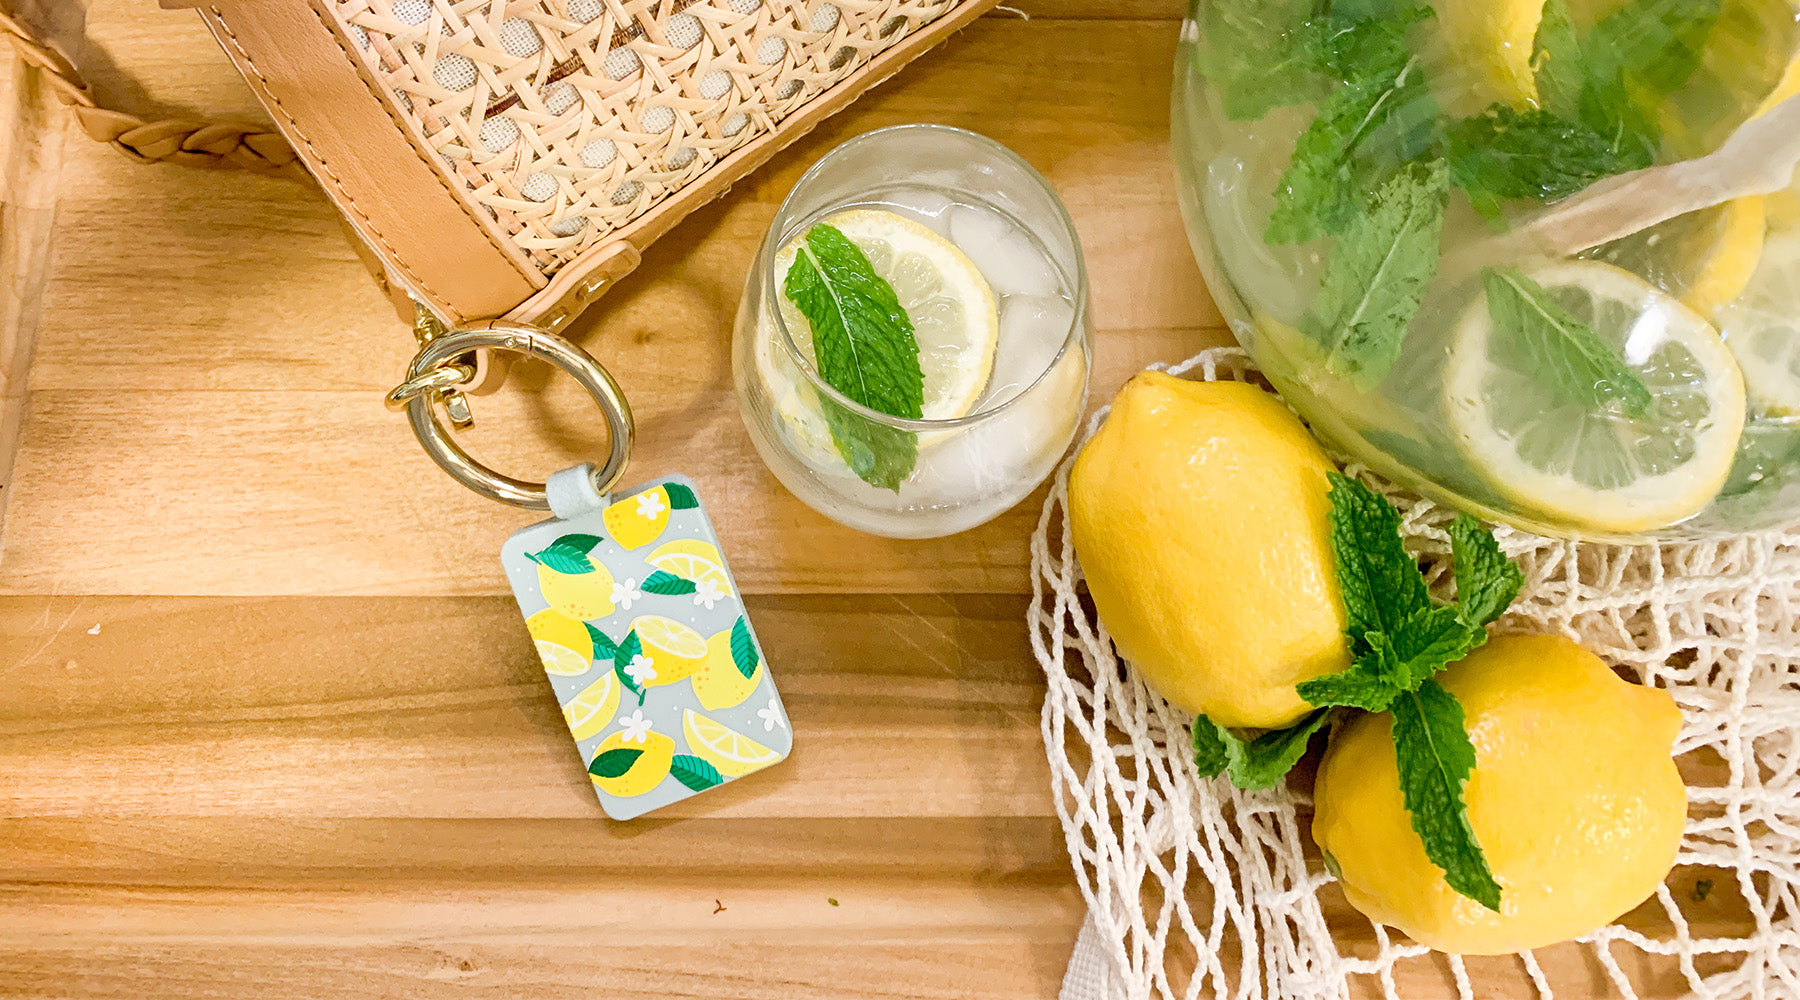 Mint Lemonade Recipe